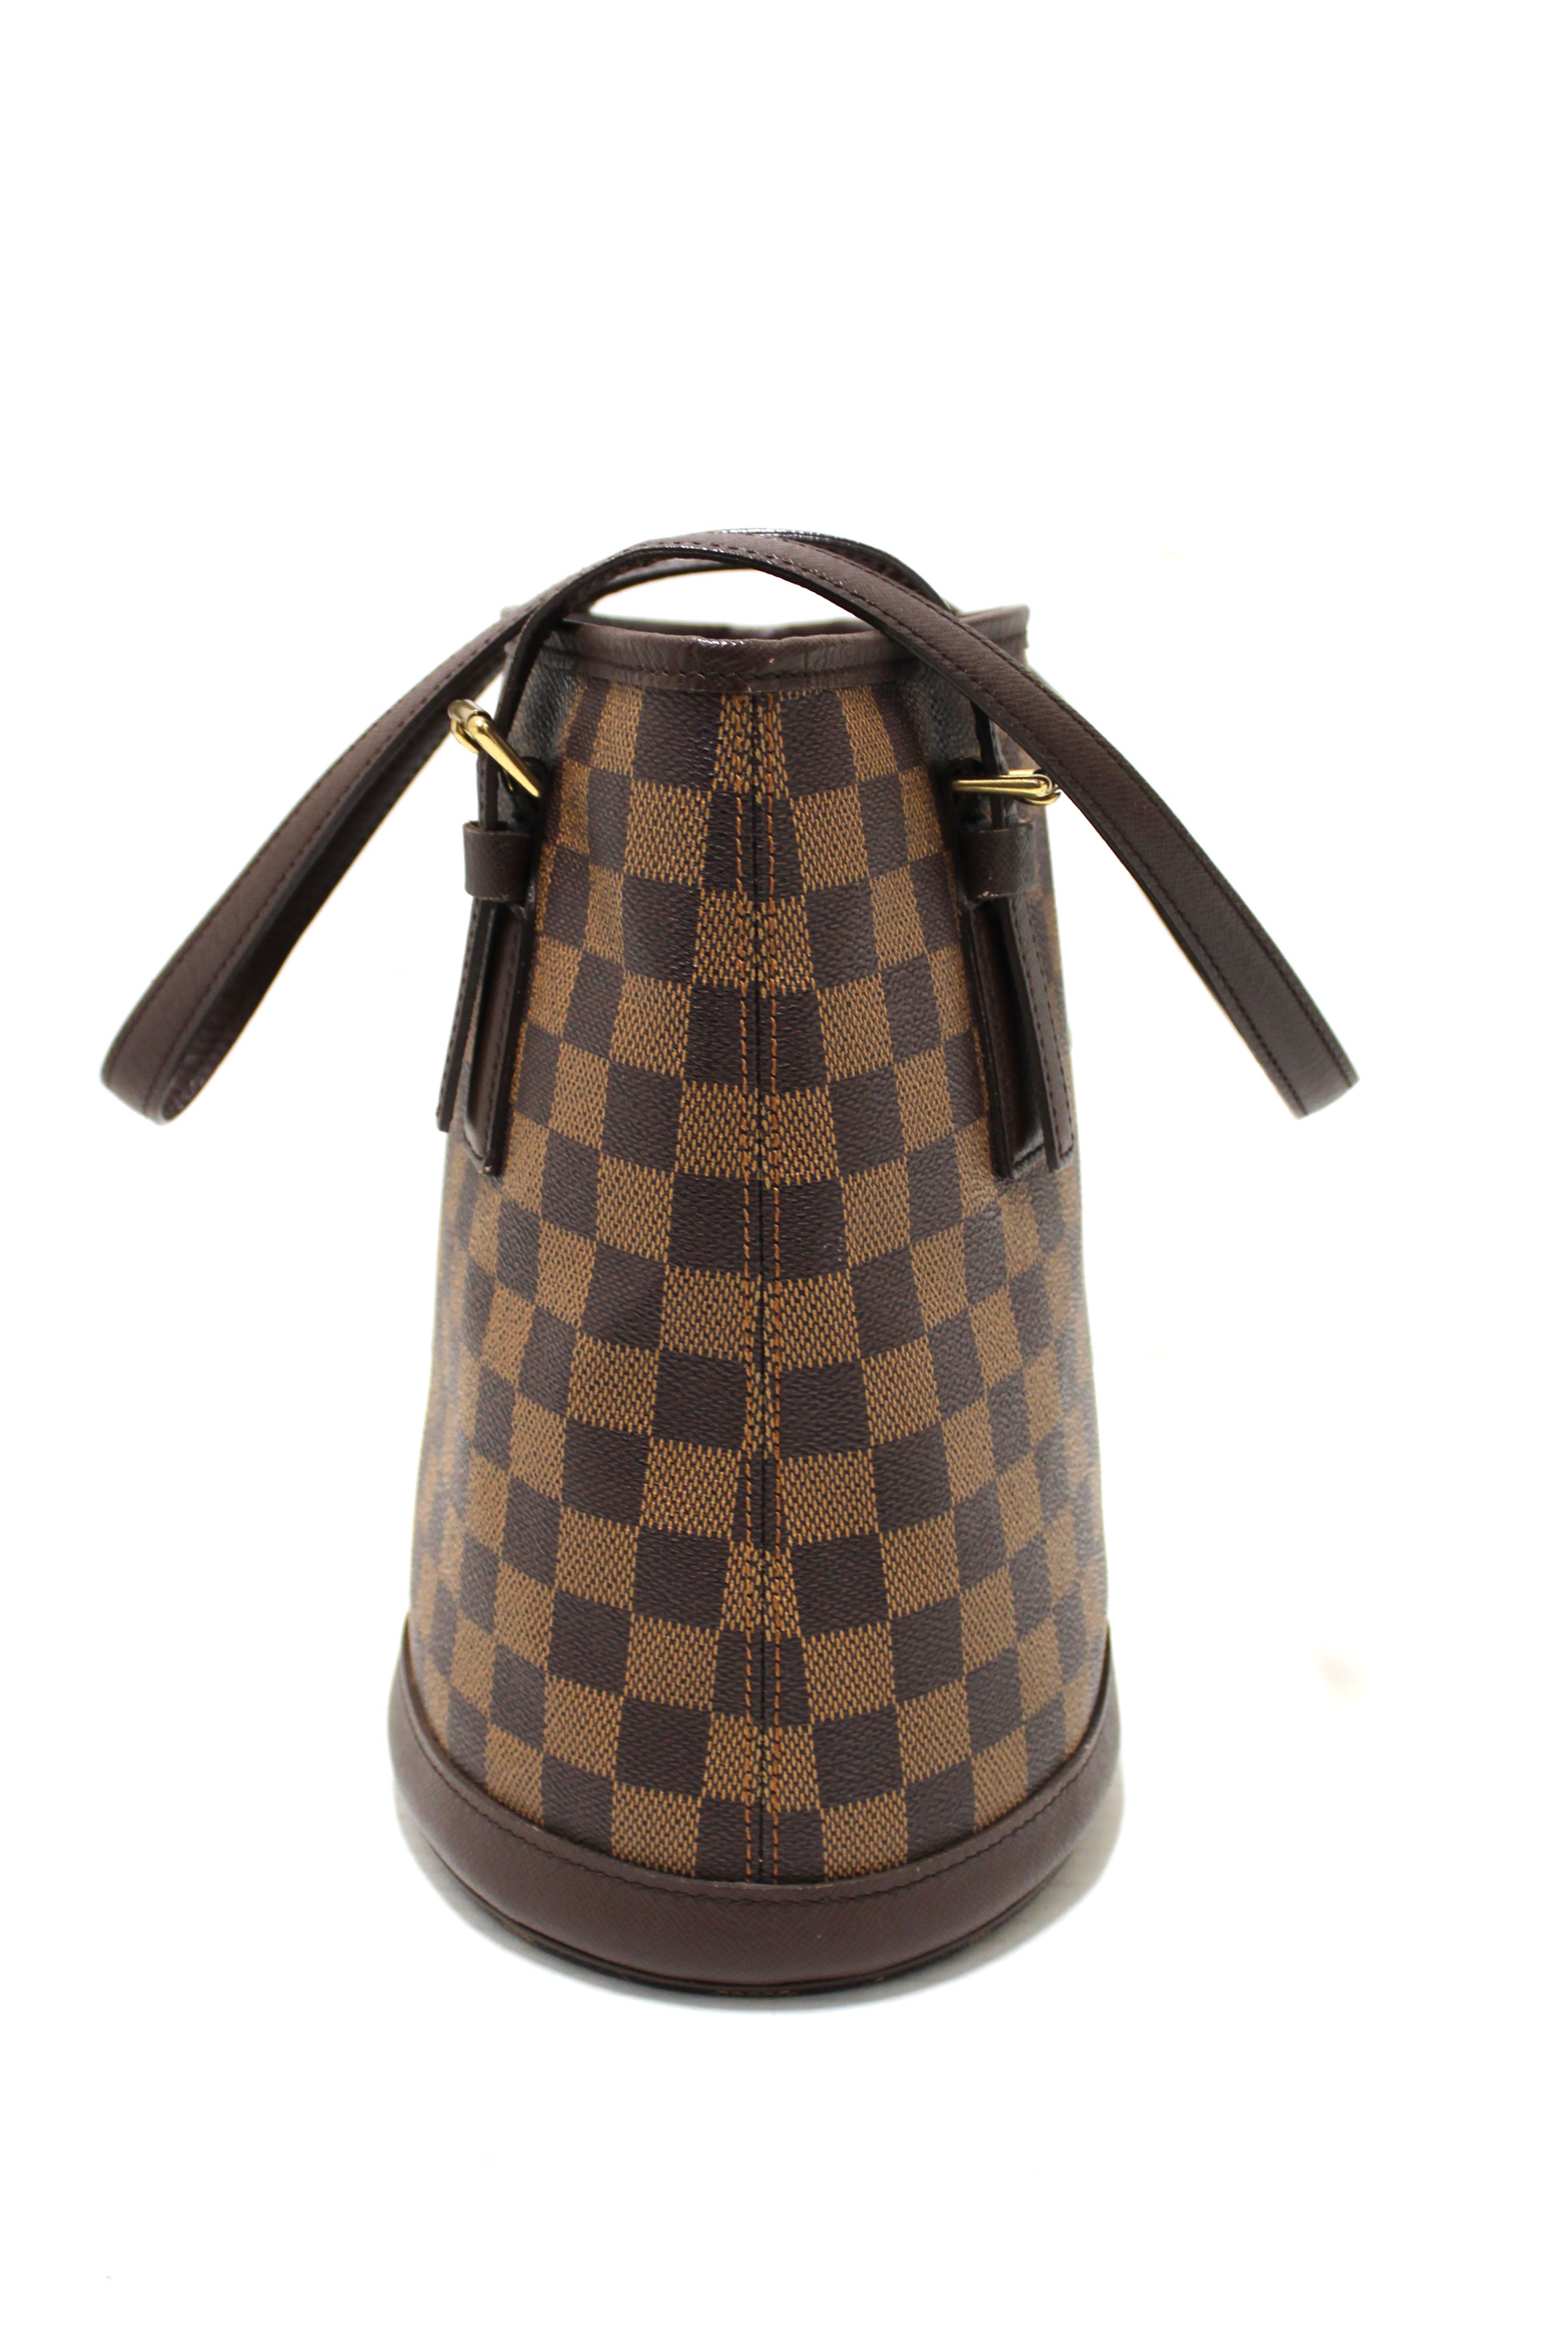 Louis Vuitton, Bags, Louis Vuitton Lv Hand Bag N4224 Bucket Brown Damier